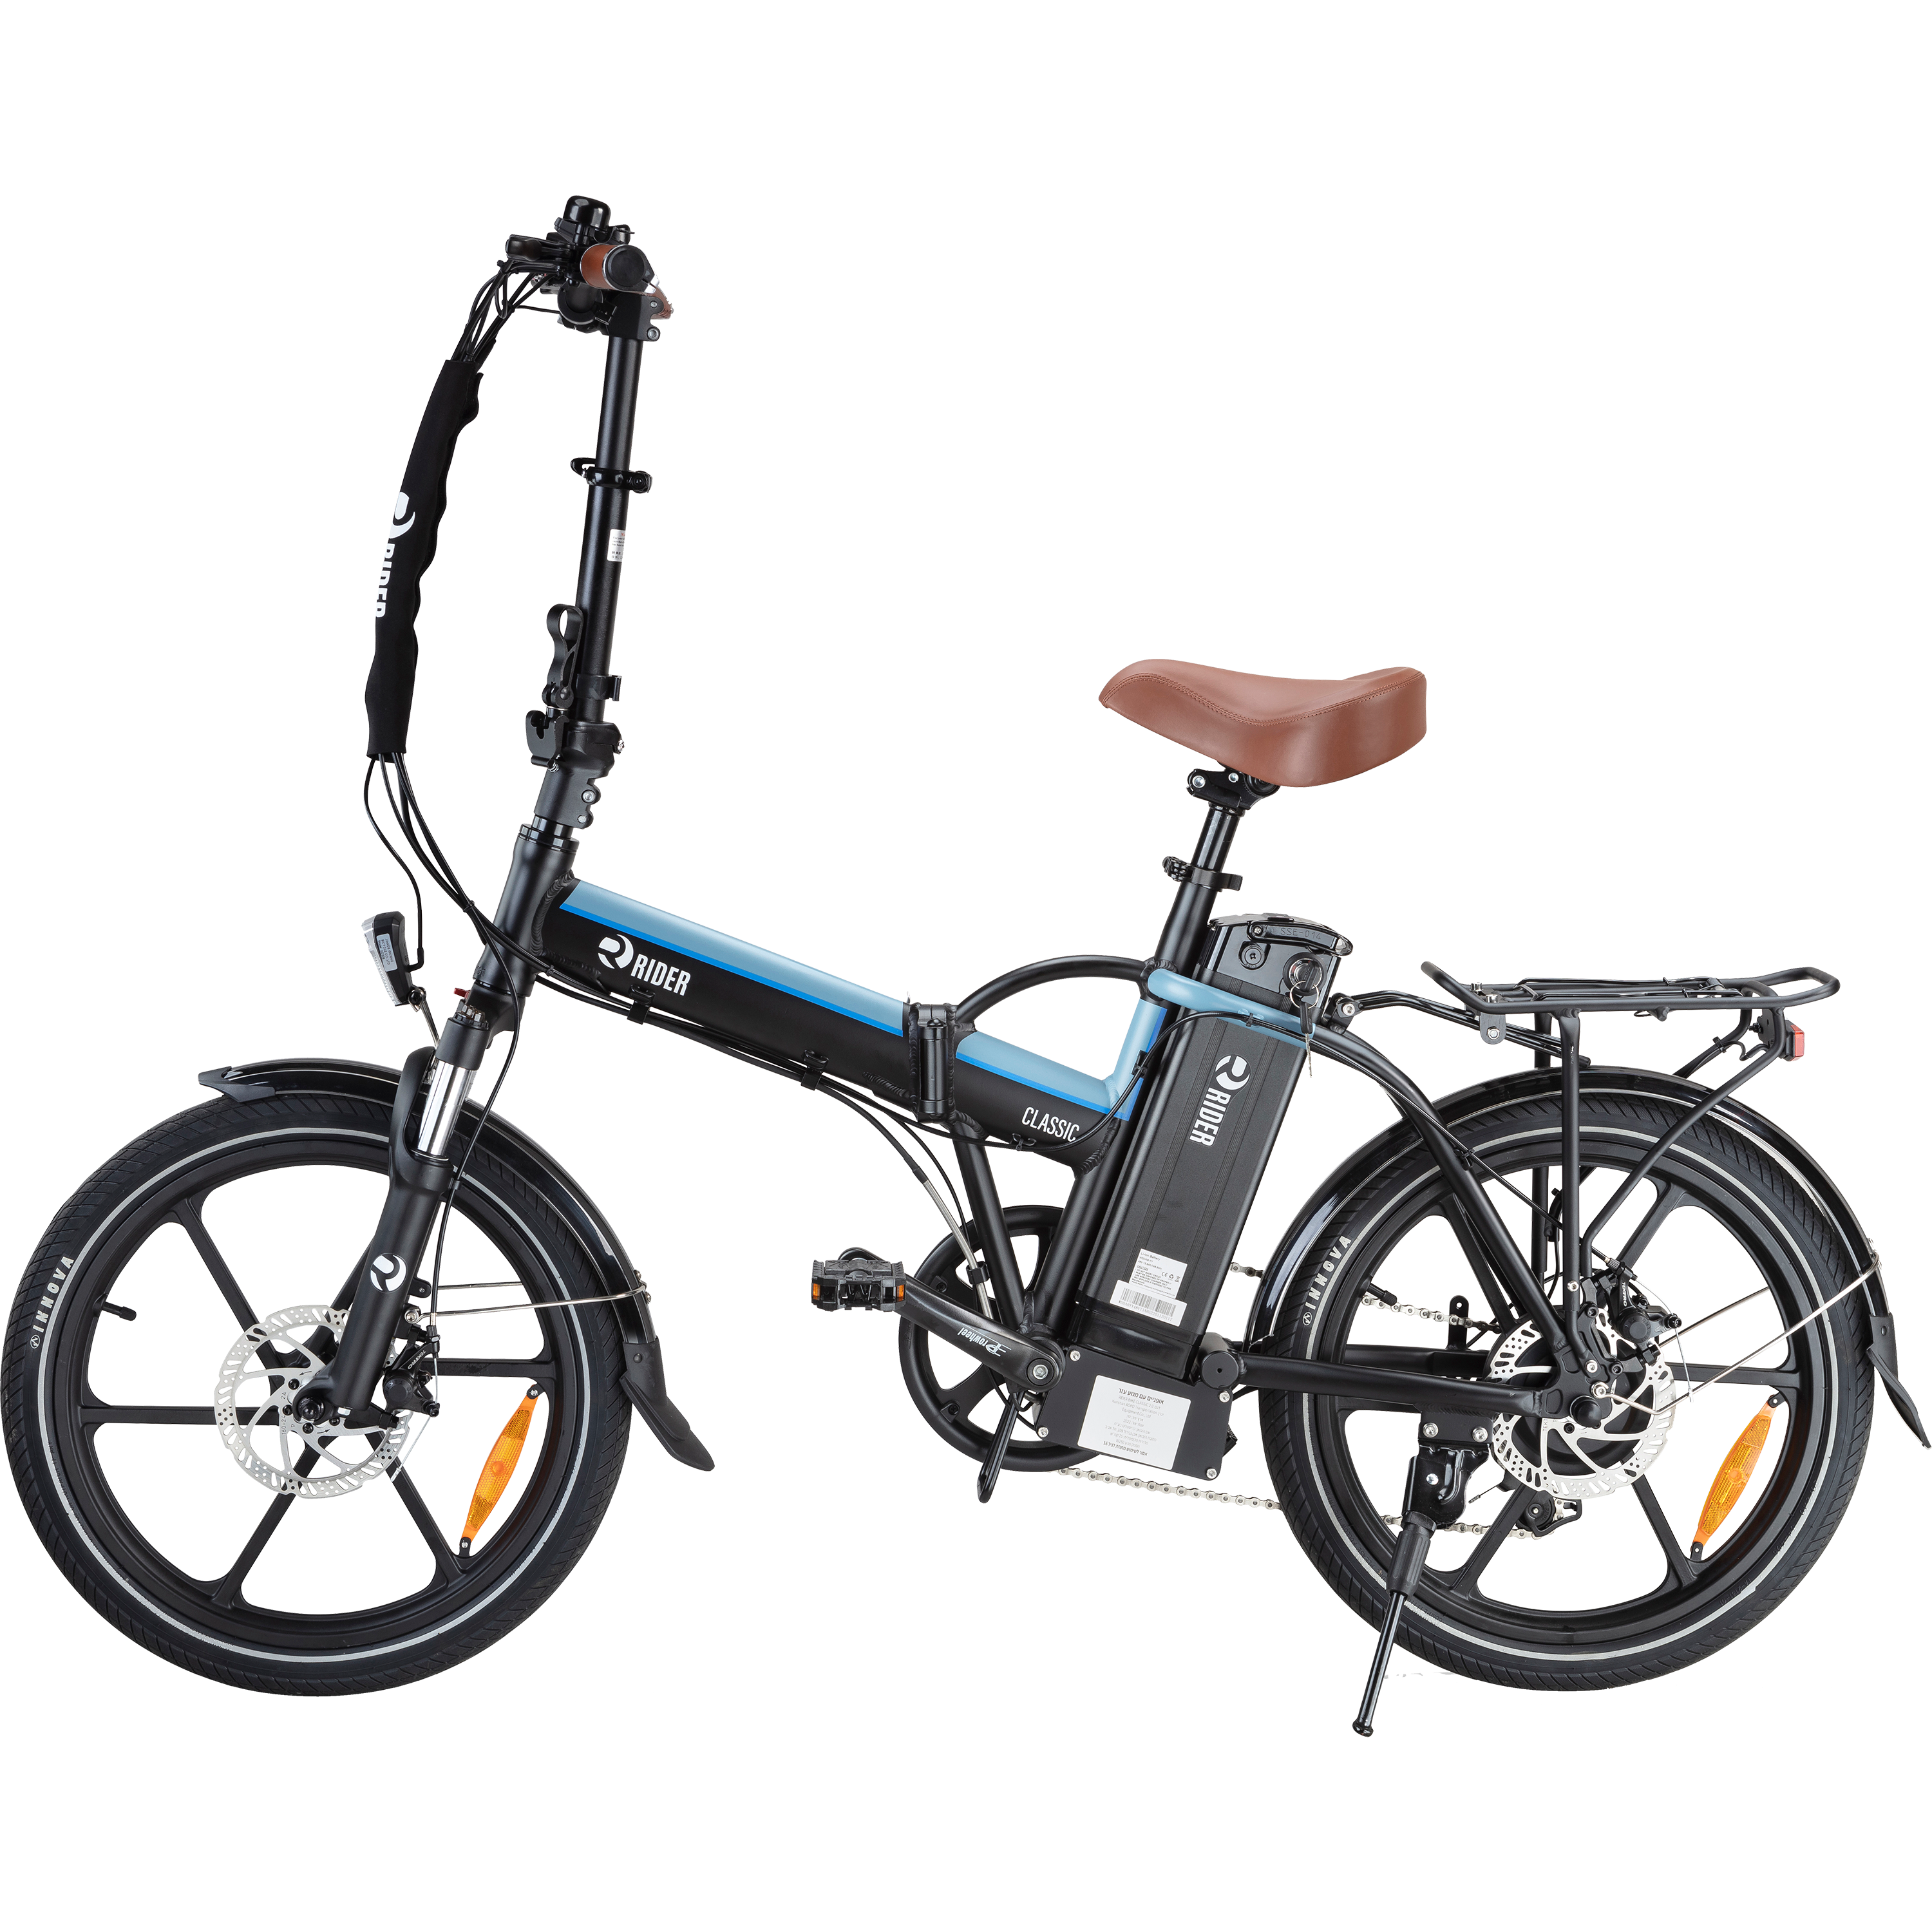 אופניים חשמליים עם צג דיגיטלי Rider Classic 2.0 וגלגלים בגודל 20